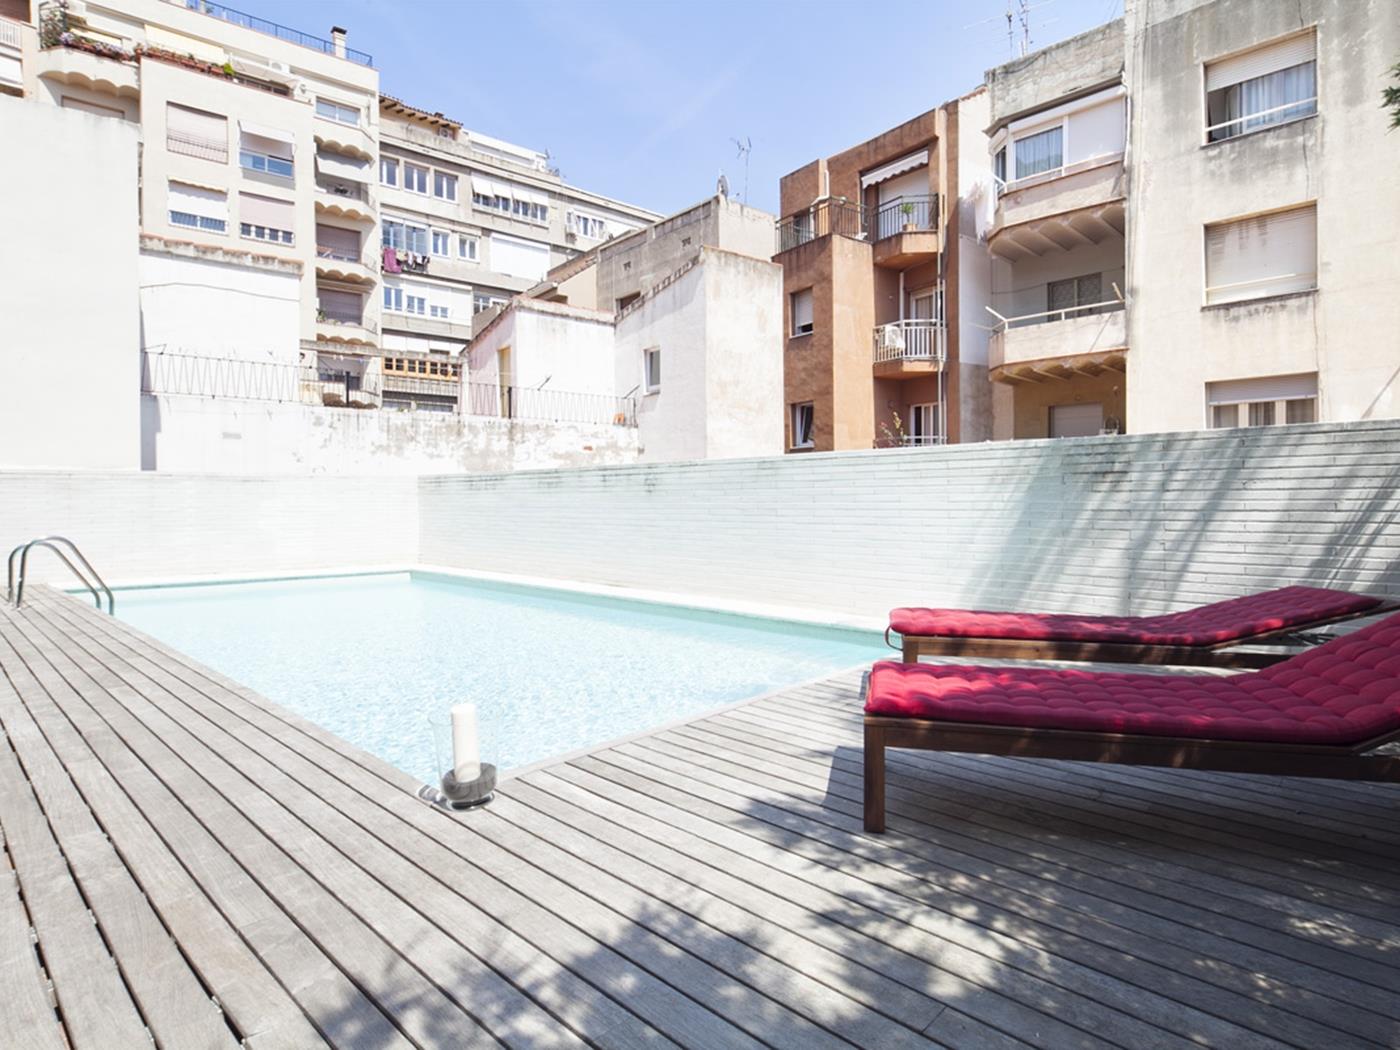 غراسيا شقة علوية مع تراس وحمام سباحة - My Space Barcelona شقة